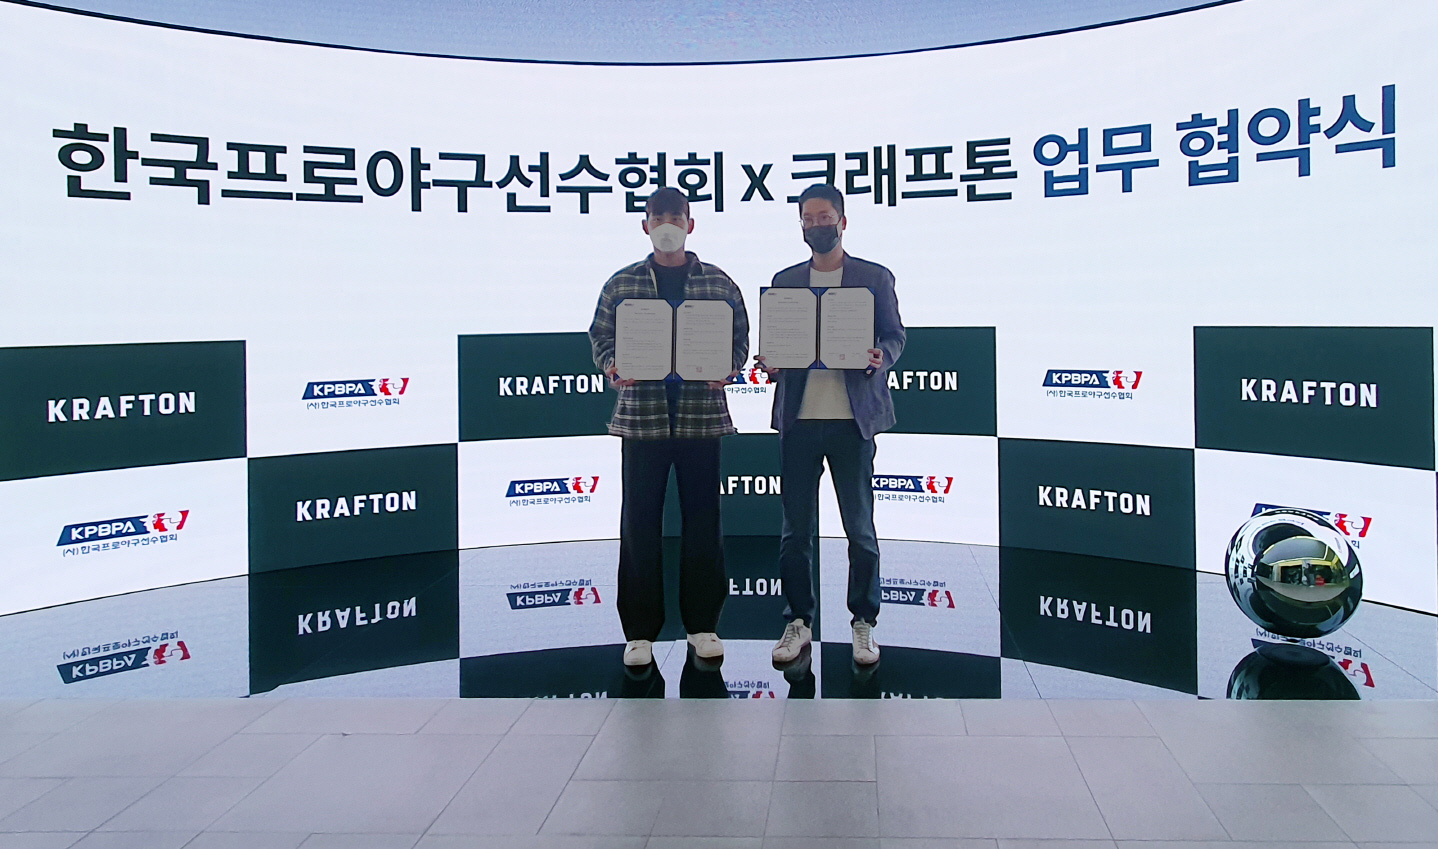 한국프로야구선수협회 ‘배그’ 자선대회 참가